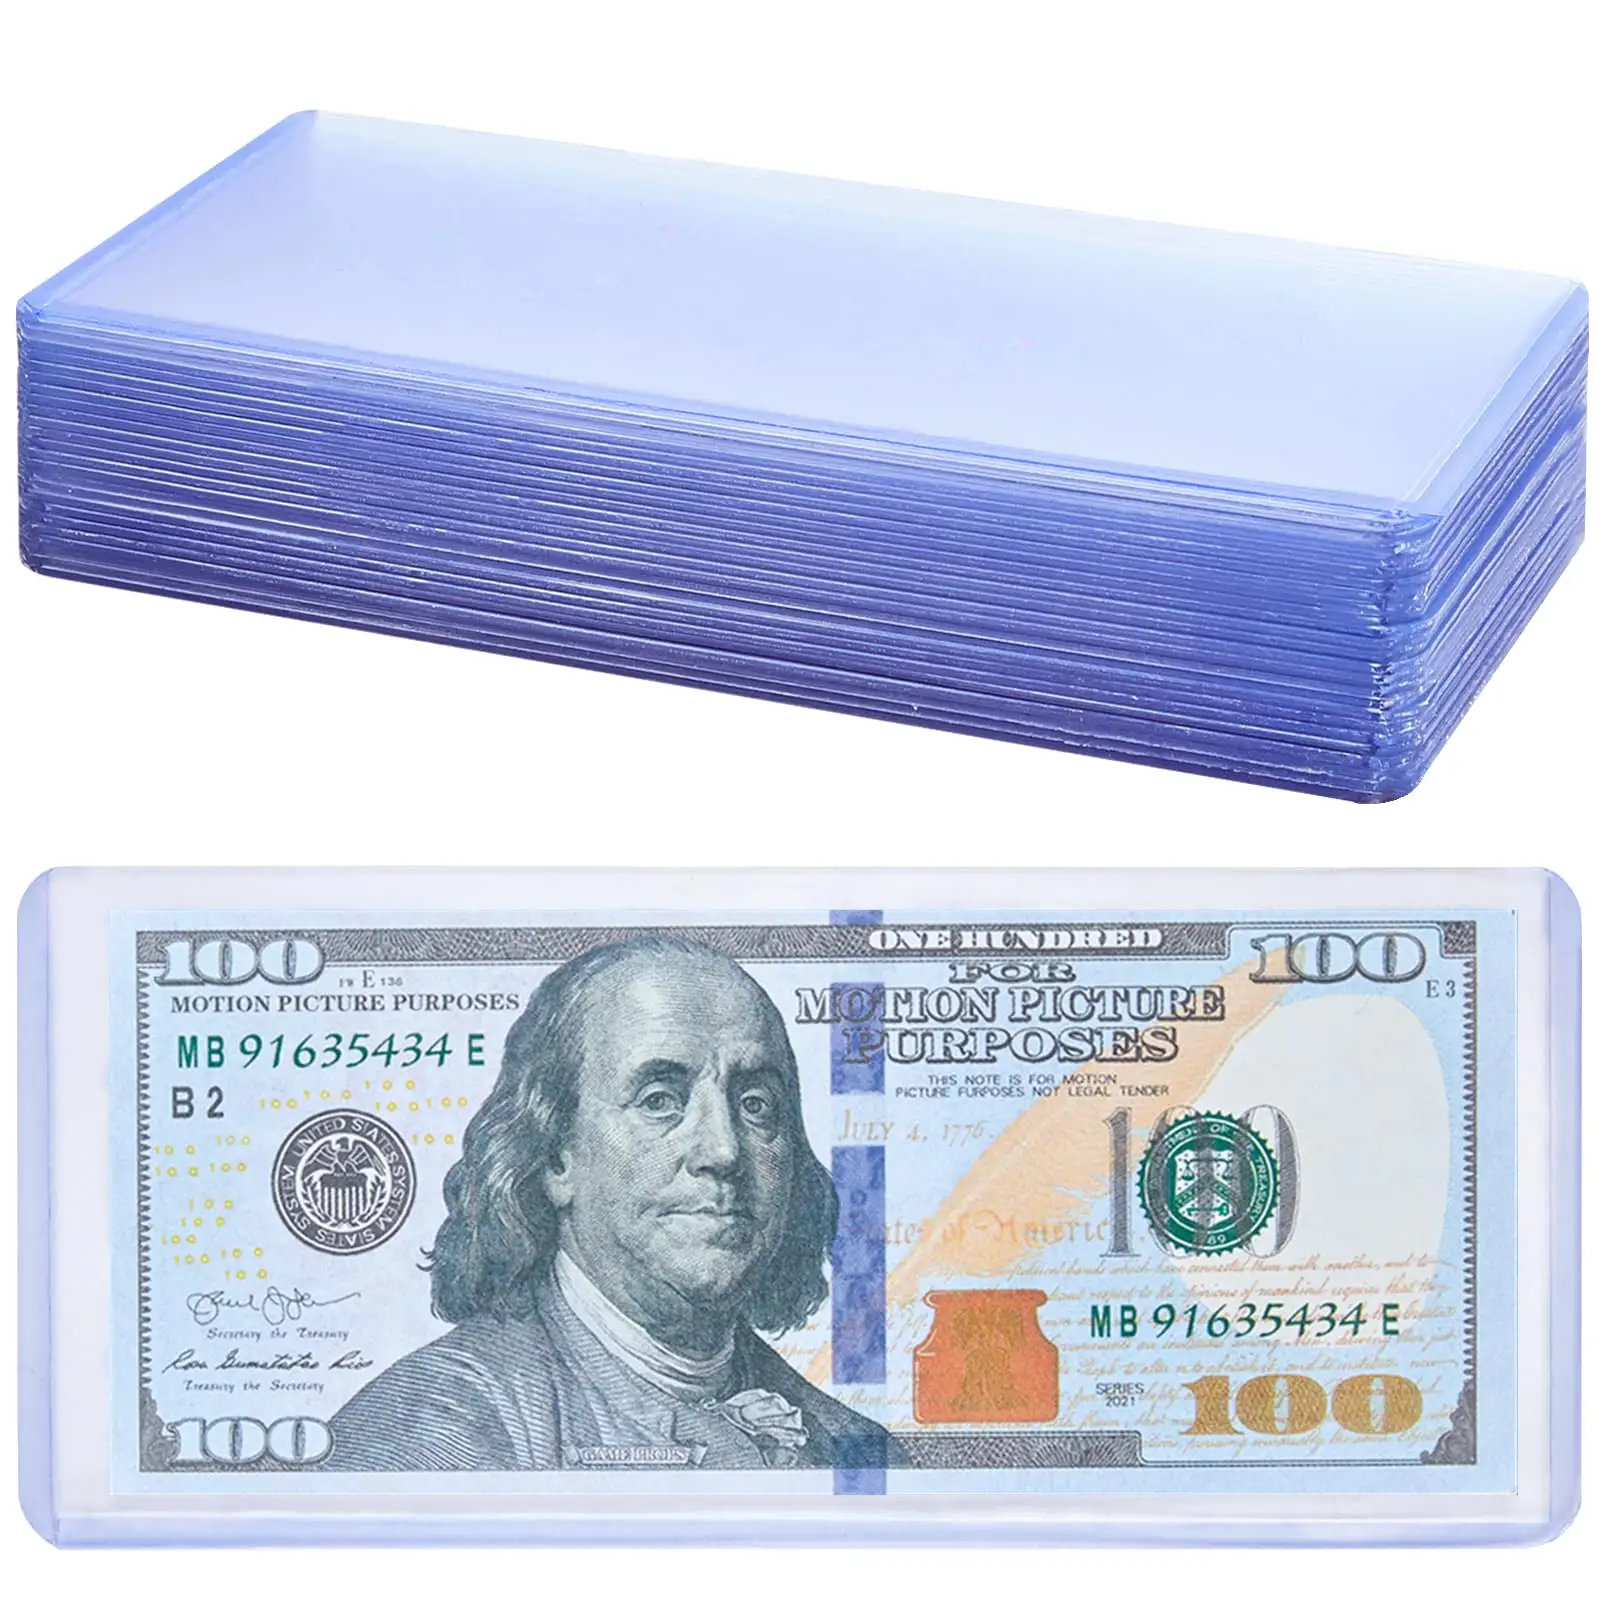 Benutzer definierte 6,8x2,9 Zoll transparente Banknoten mit normaler Währung Stempel sammeln Dollar Bill Top Loader Protectors Inhaber Ärmel